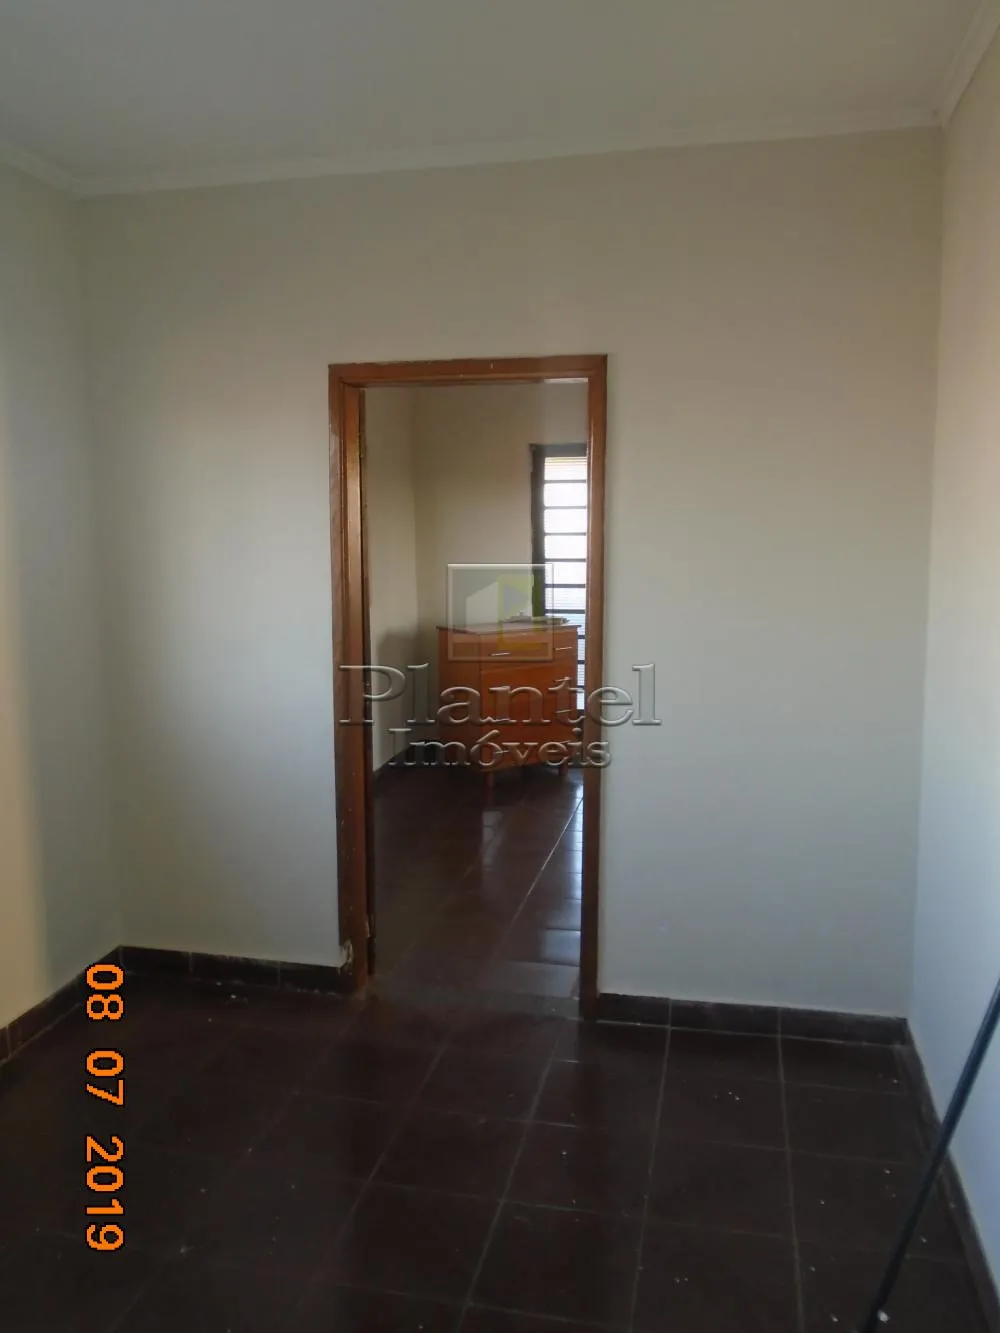 Imobiliária Ribeirão Preto - Plantel Imóveis - Casa - Quintino Facci II - Ribeirão Preto